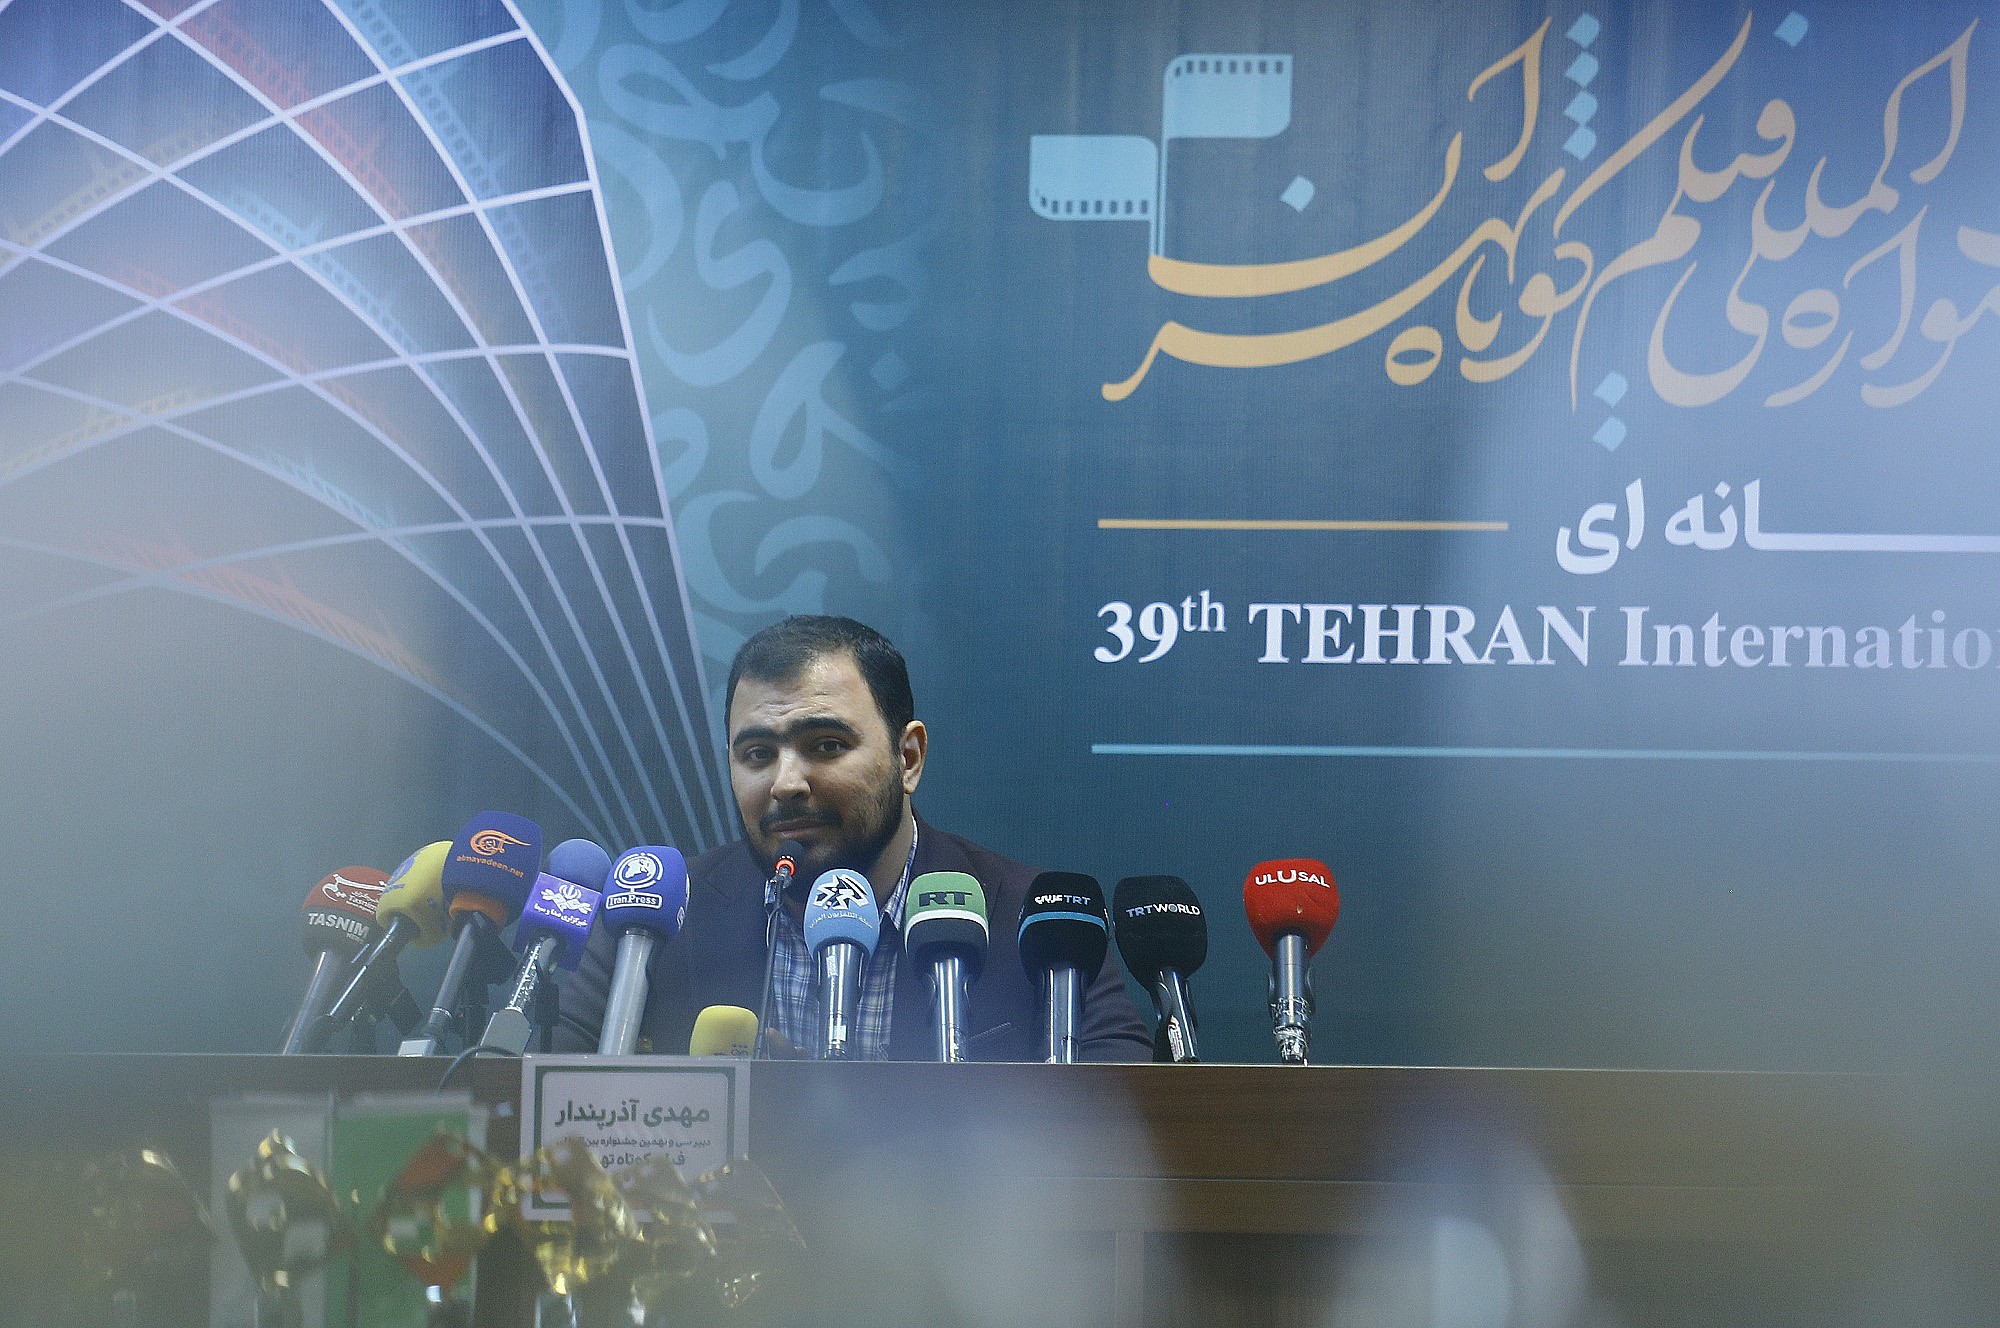 الحائز على تأييد ودعم أكاديمية الأوسكار... قريباً إنطلاق مهرجان طهران الدولي التاسع والثلاثون للأفلام القصيرة 7.jpg